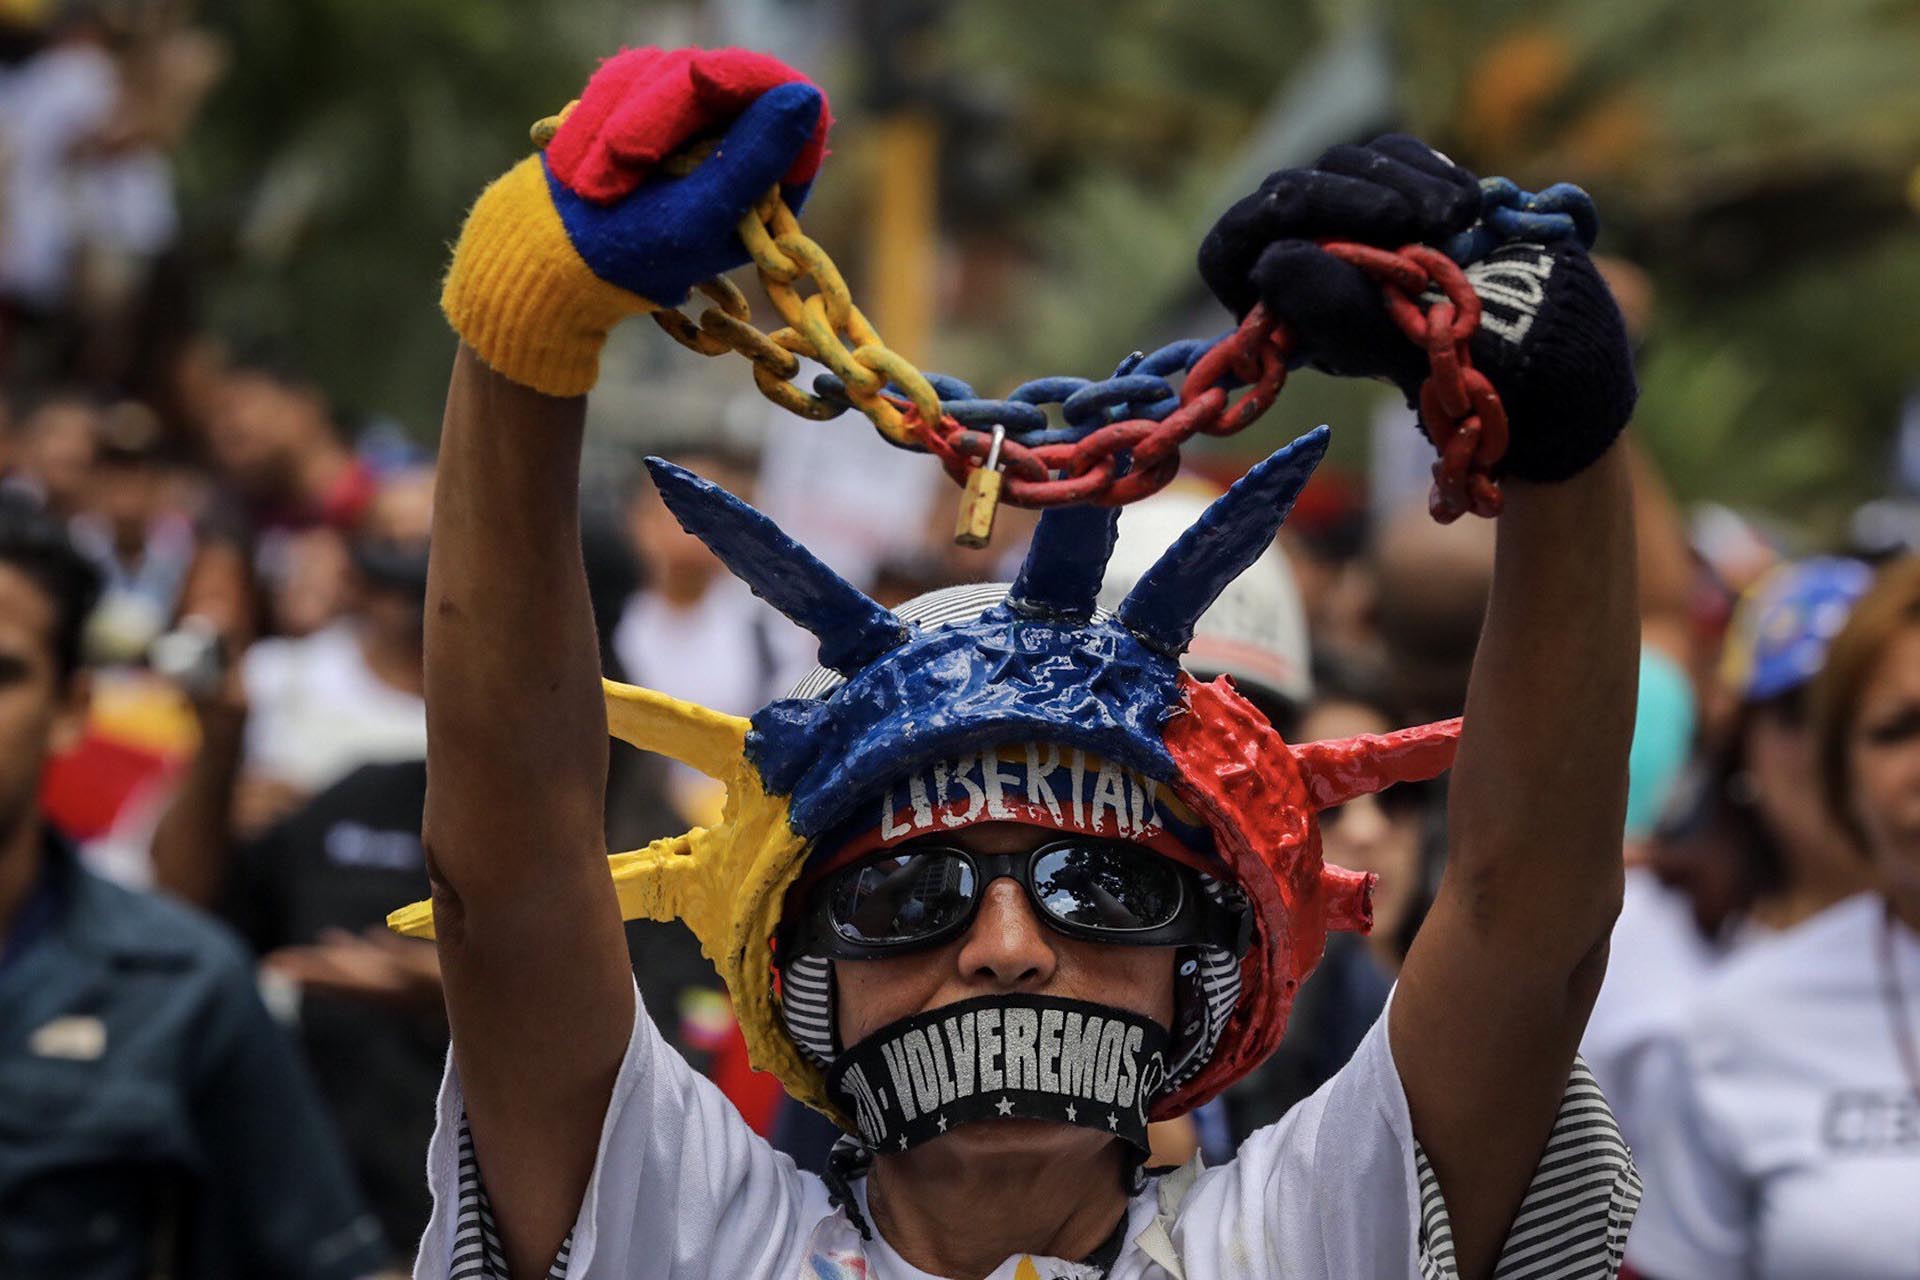 Cidh hablará sobre la libertad de expresión en Venezuela el #22Jun